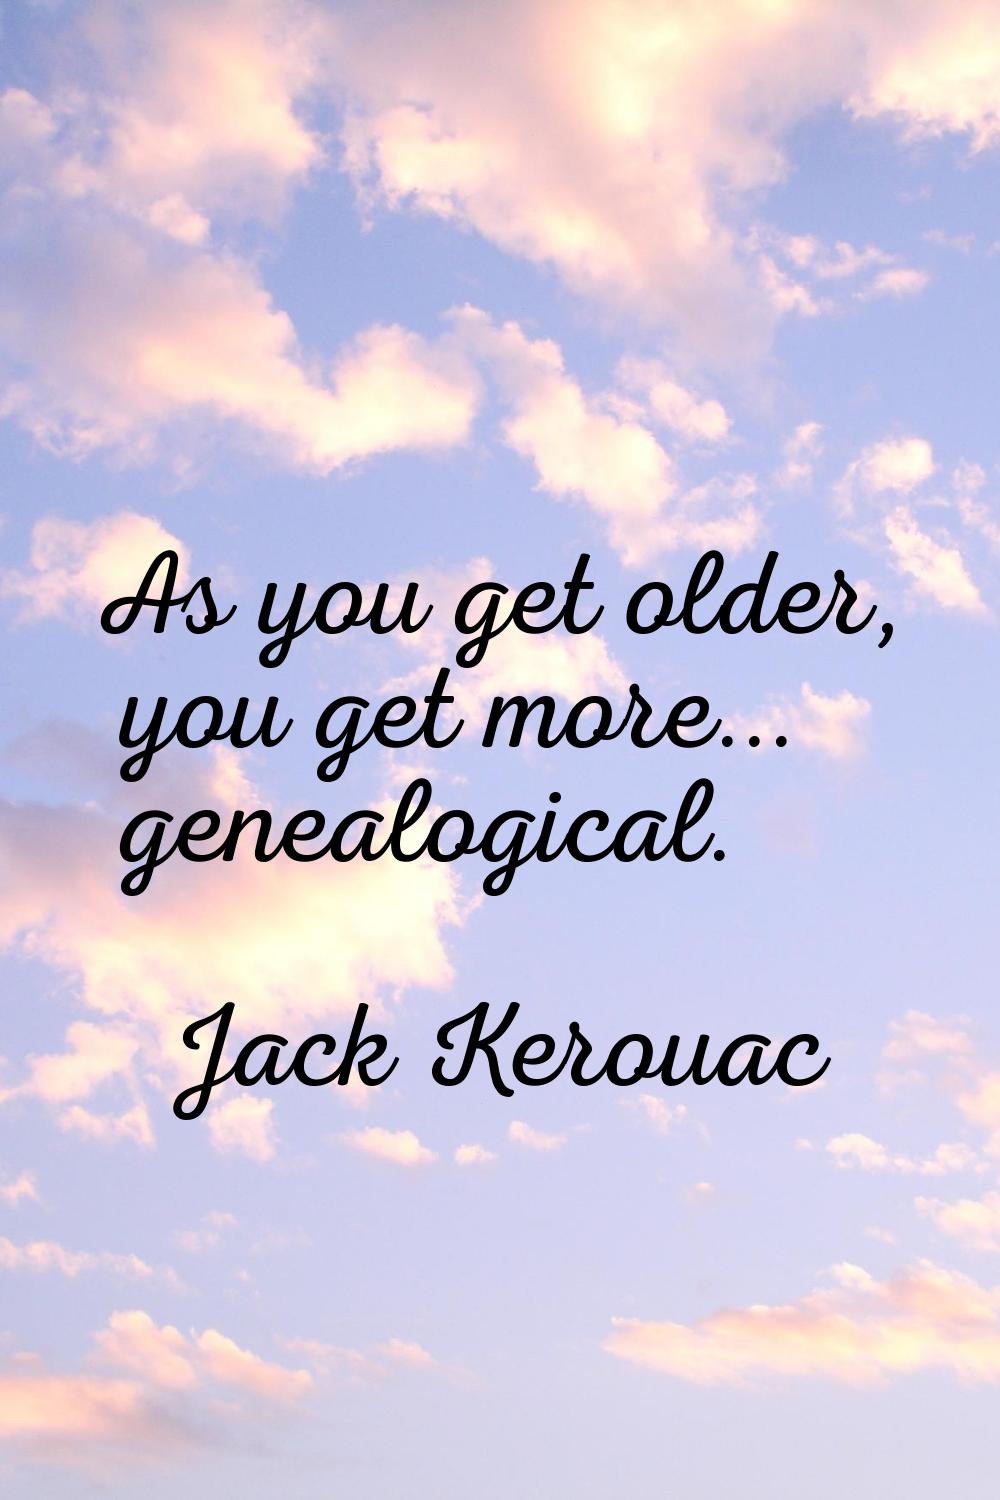 As you get older, you get more... genealogical.